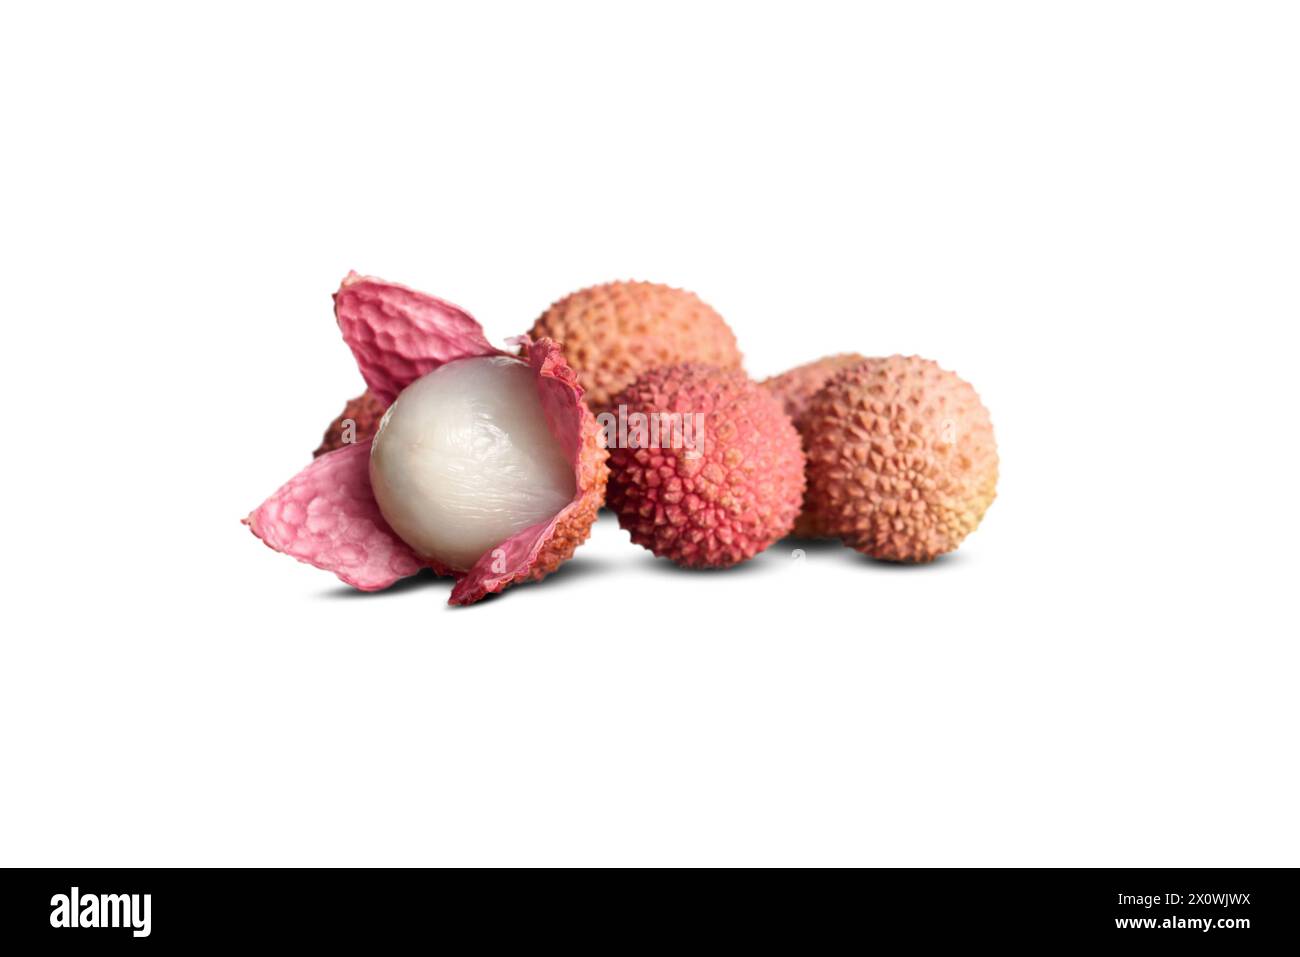 Peeled lychee fruit on a white isolated background. Stock Photo